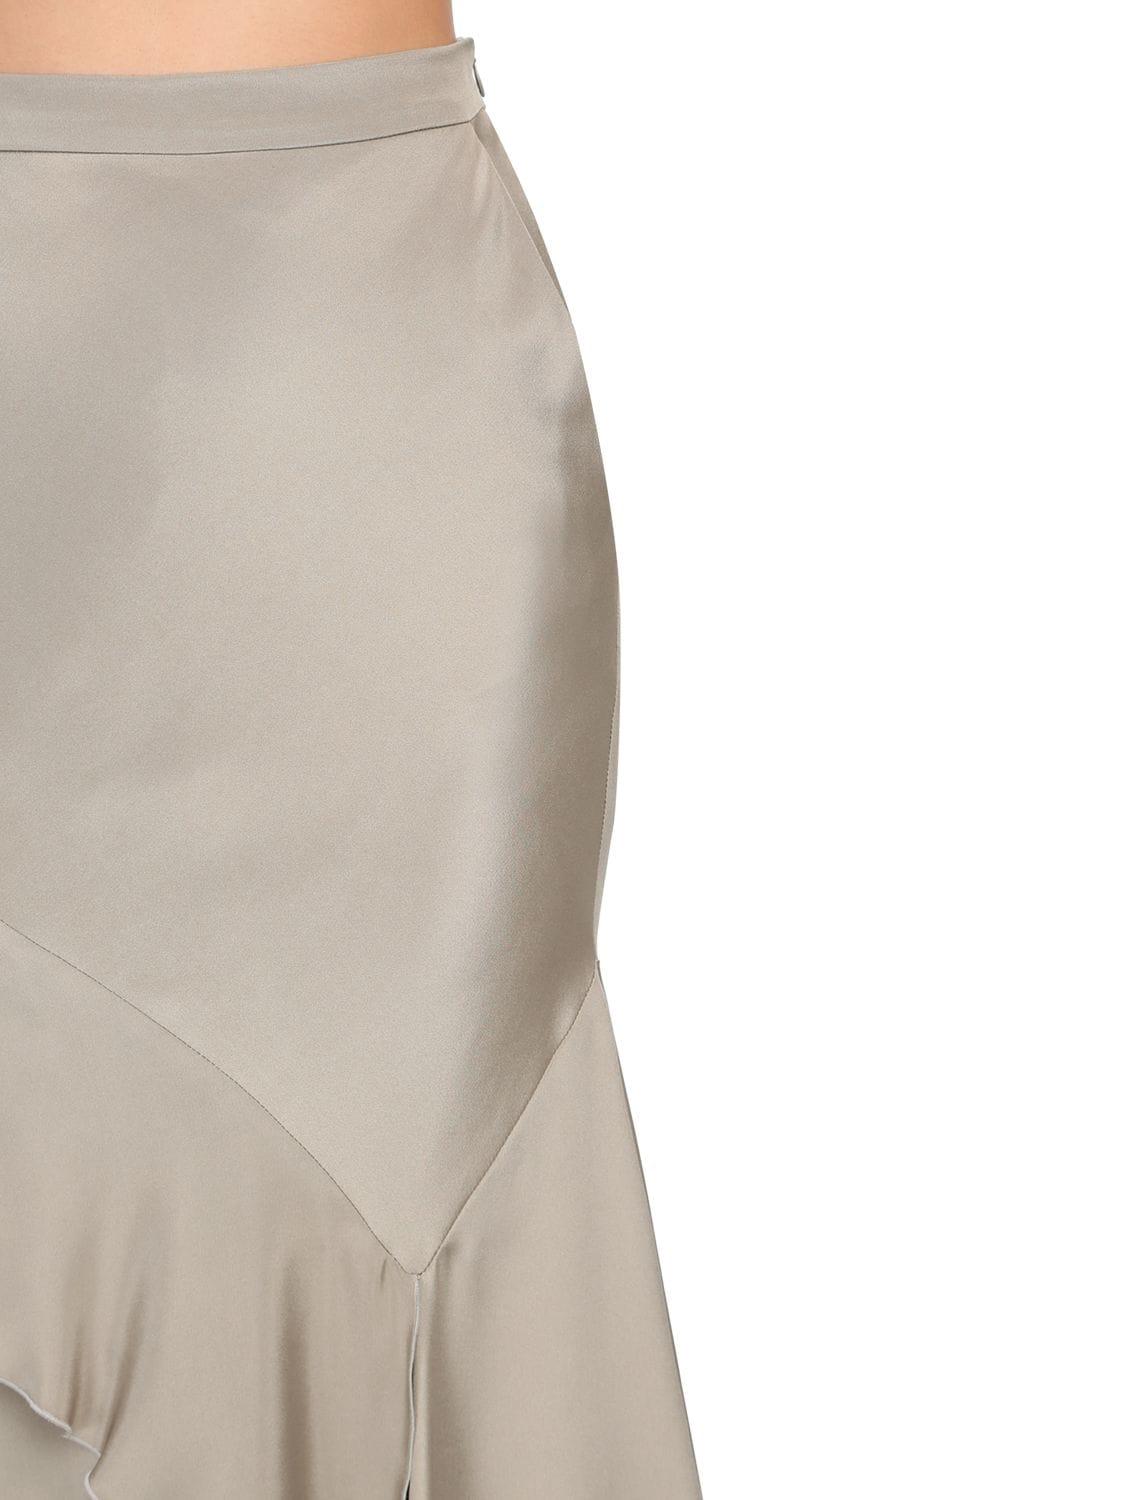 Max Mara Ruffled Silk Crepe De Chine Long Skirt in Natural | Lyst